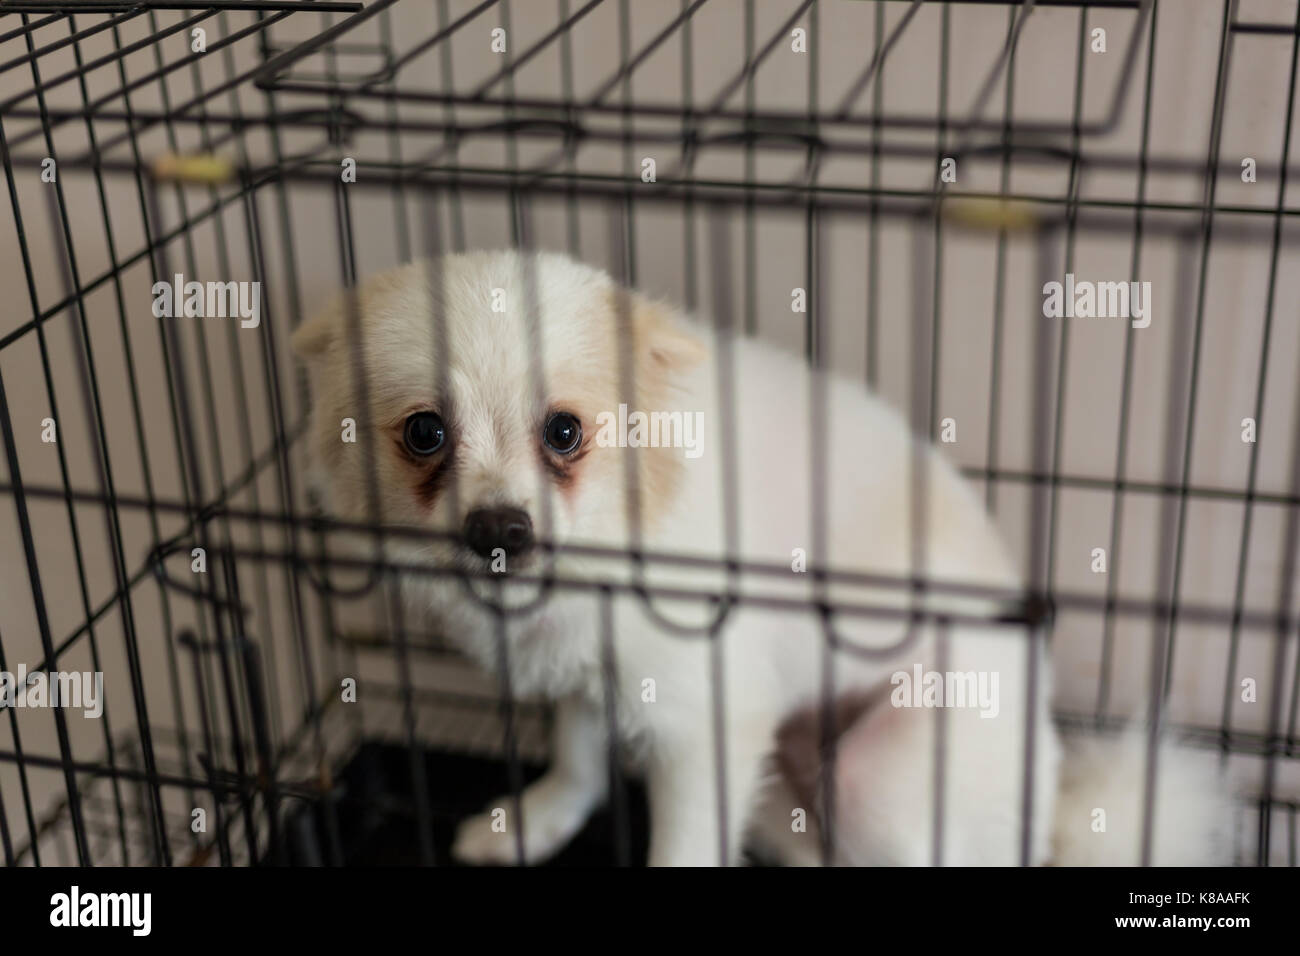 Ein Hund Ist In Den Kafig Gefangen Stockfotografie Alamy